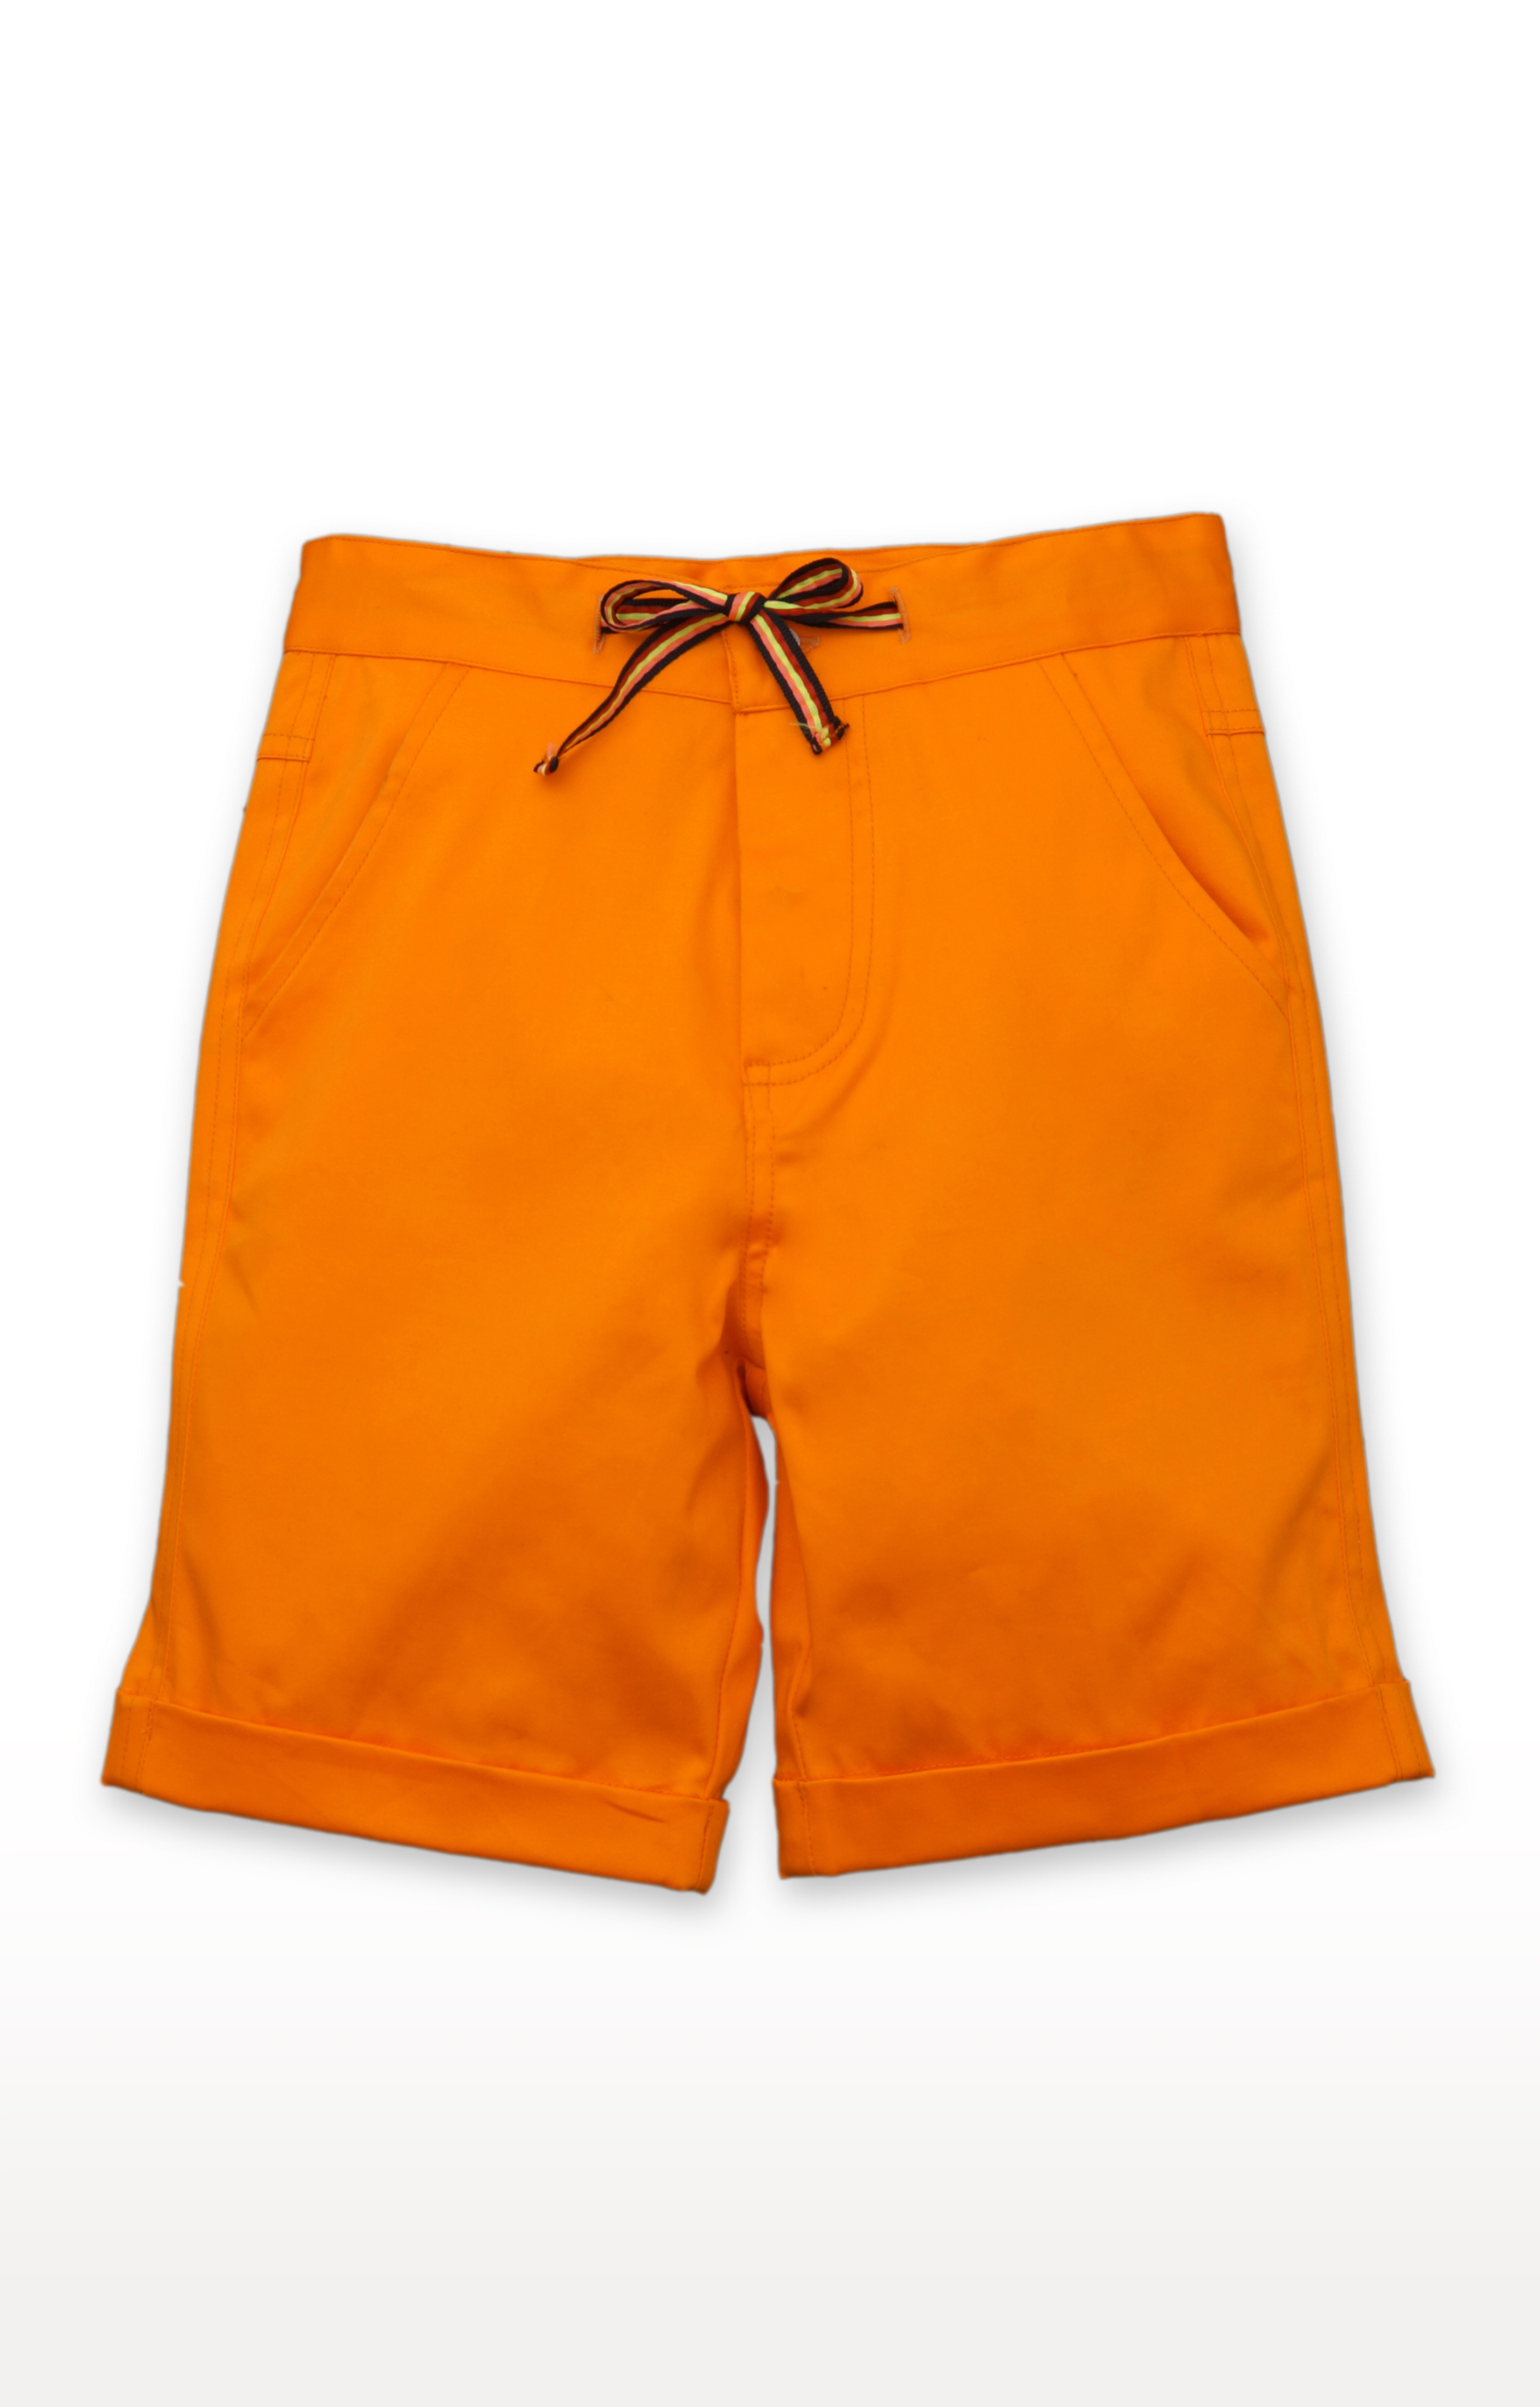 Popsicles Clothing | Popsicles Tangerine Shorts Regular Fit For Boys